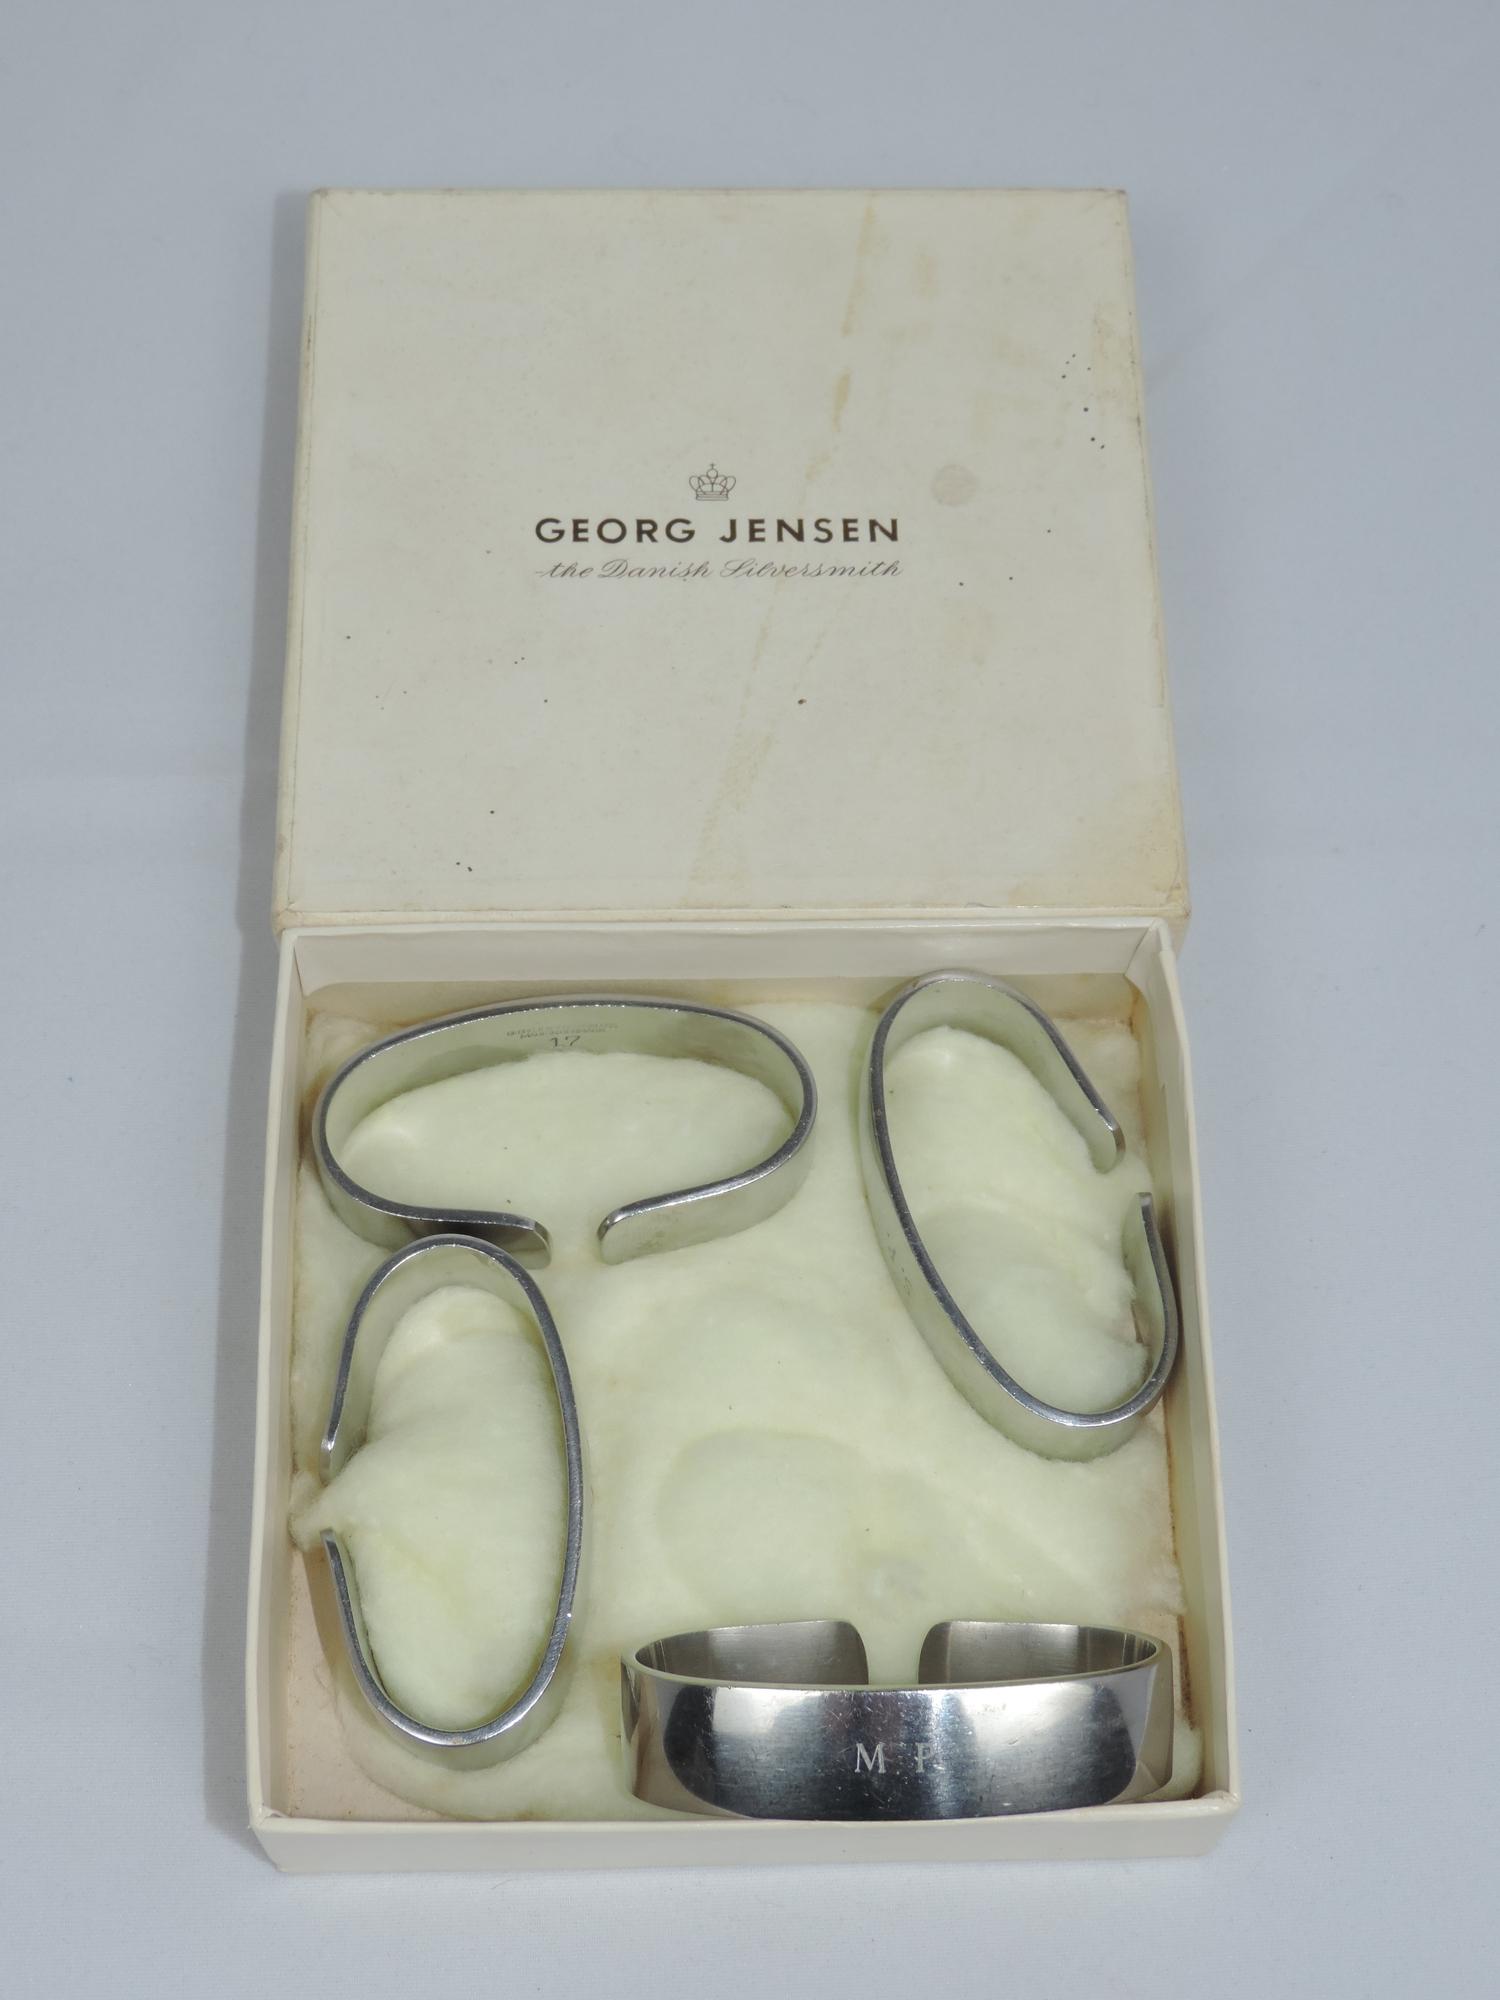 4x Georg Jensen Napkin Rings in Original Box